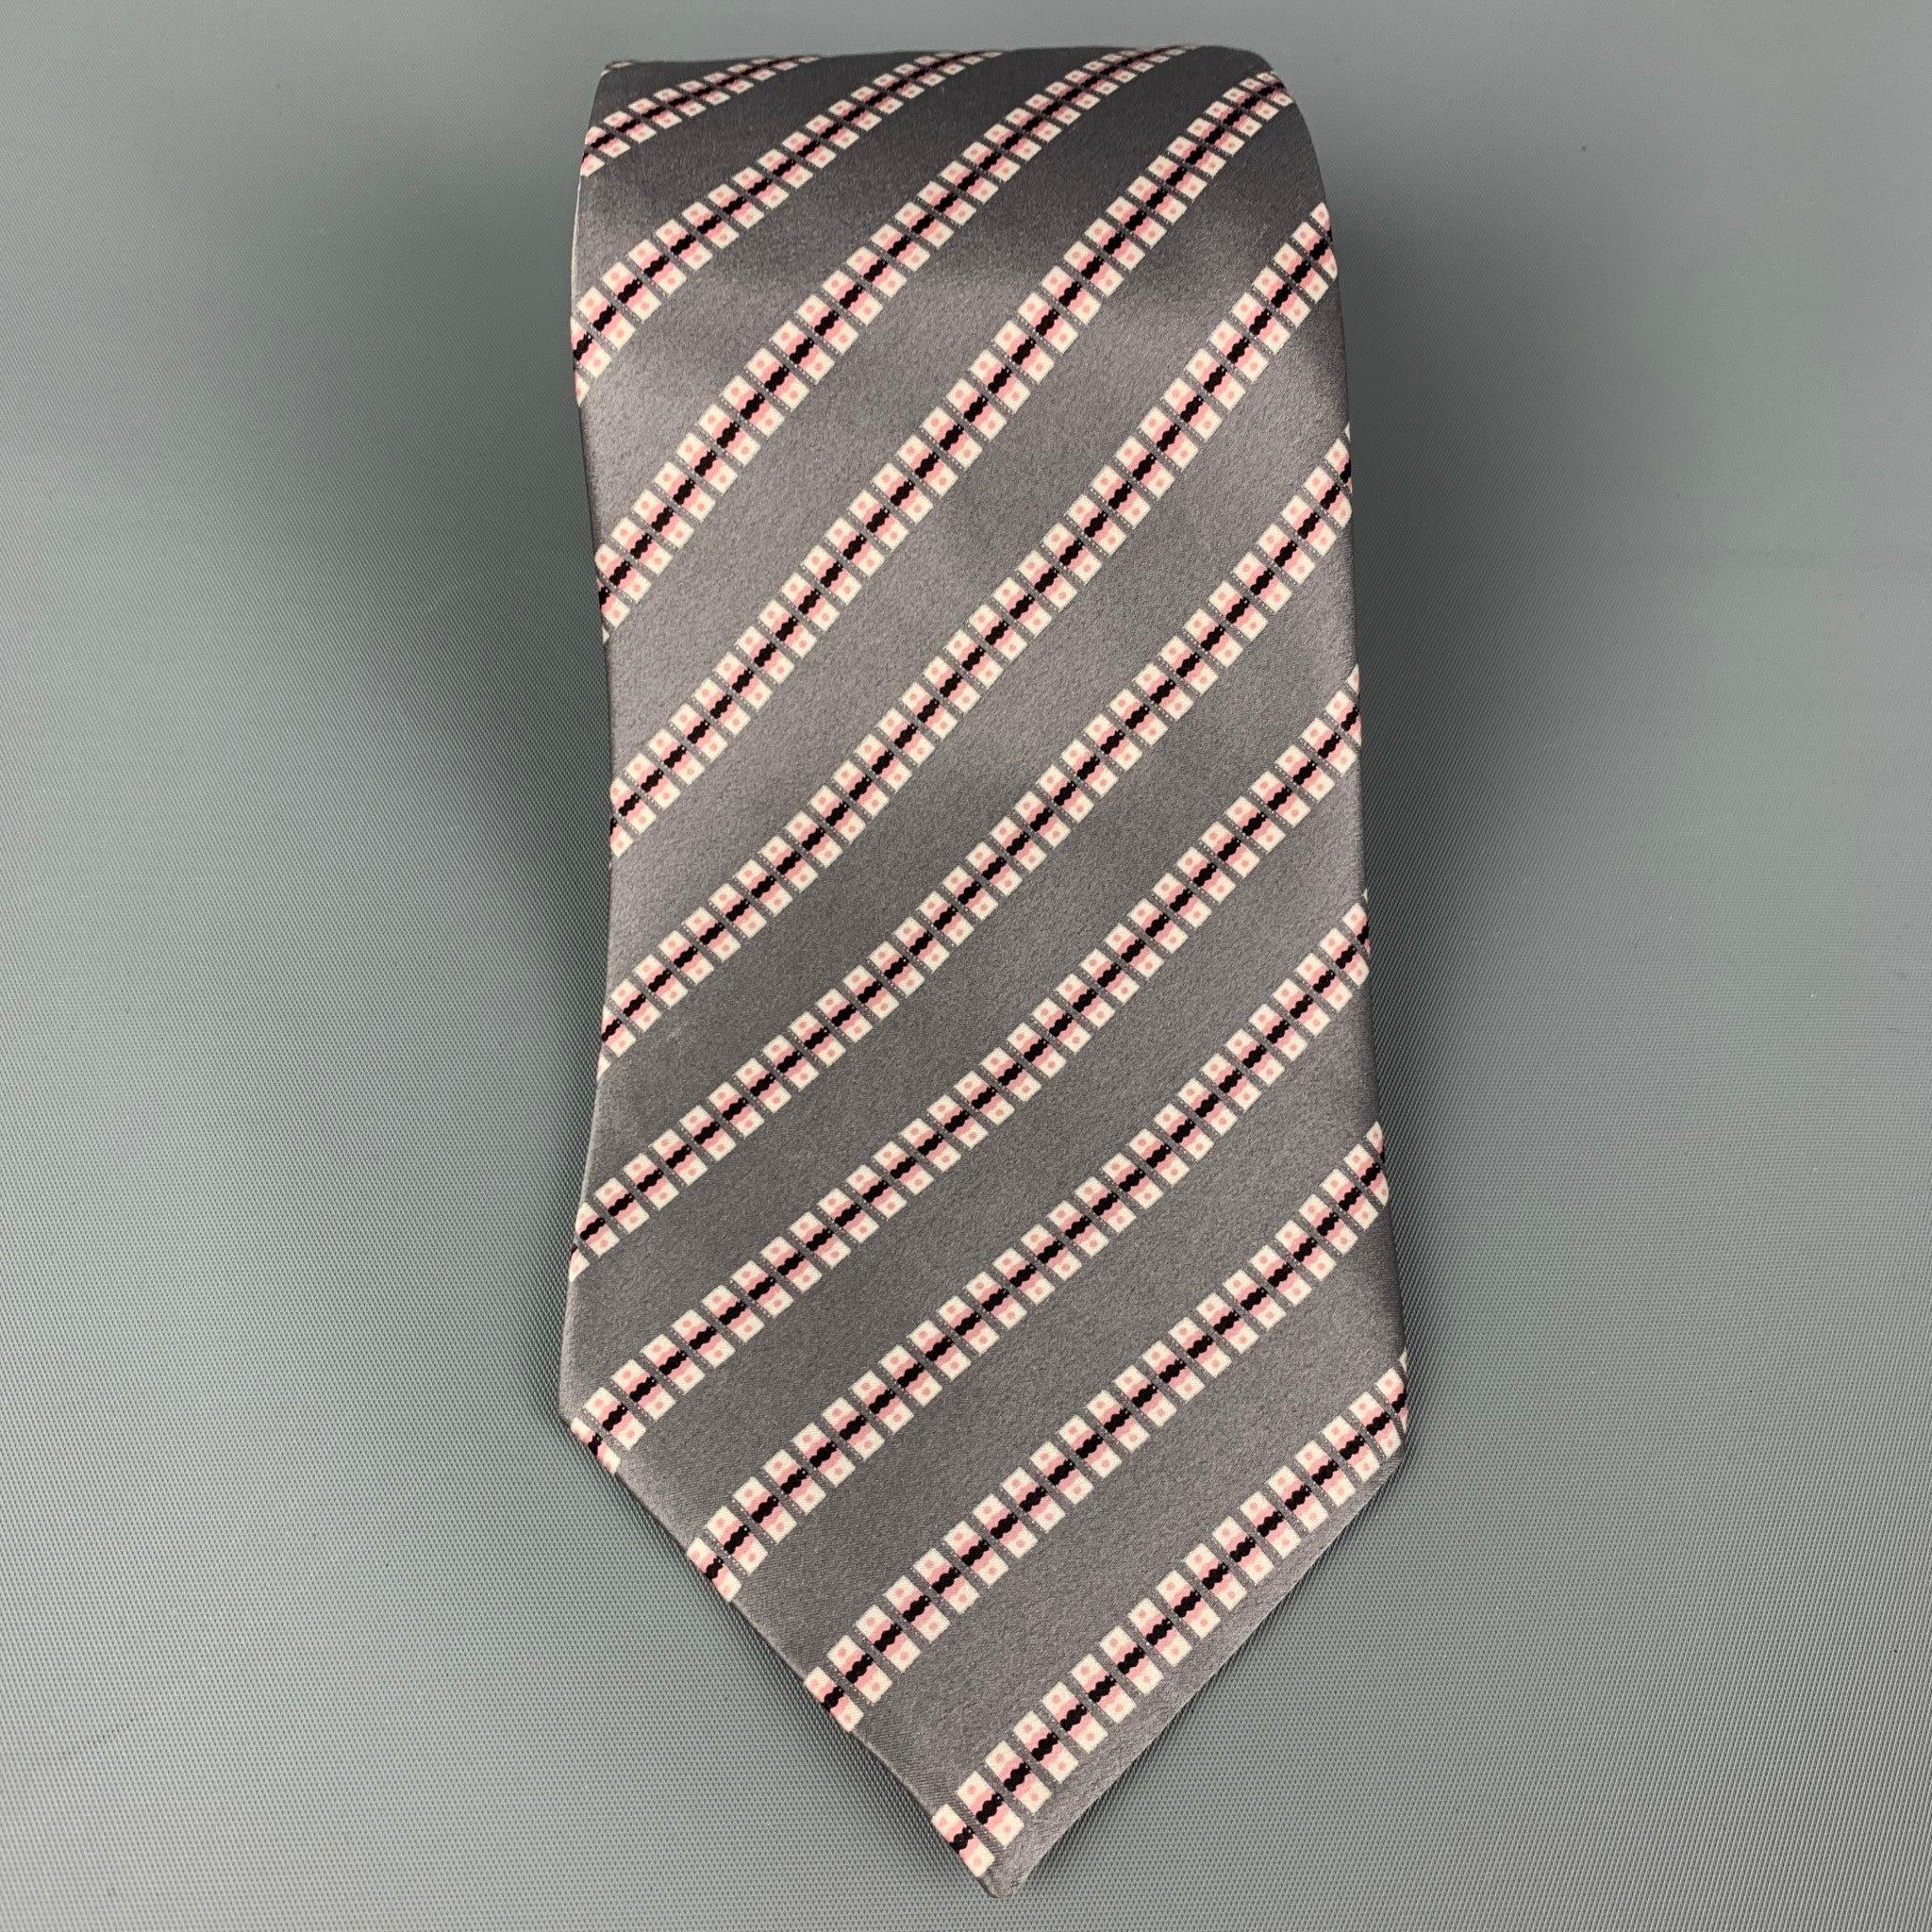 La cravate STEFANO RICCI est en satin de soie gris et blanc avec un imprimé carré. Fabriquées en Italie.
Très bon état d'usage.Largeur :
3.75 pouces 
  
  
 
Référence : 117131
Catégorie : Cravate
Plus de détails
    
Marque :  STEFANO RICCI
Couleur